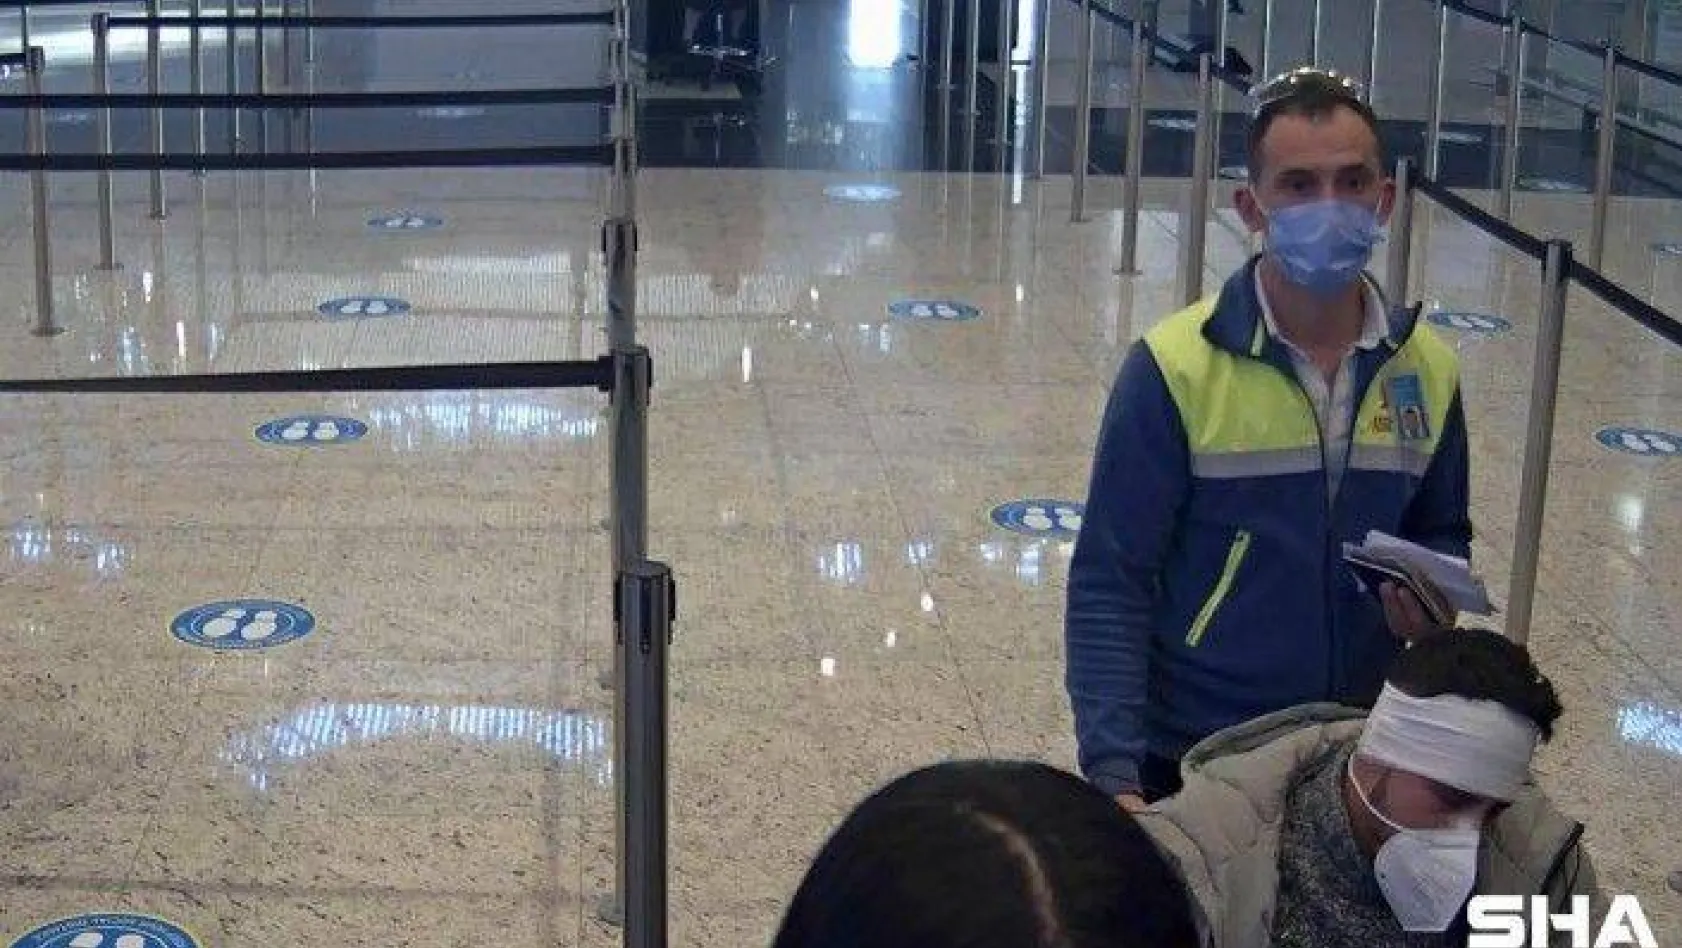 İstanbul Havalimanı'nda VİP göçmen kaçakçılığı pasaport polisine takıldı: 3 gözaltı